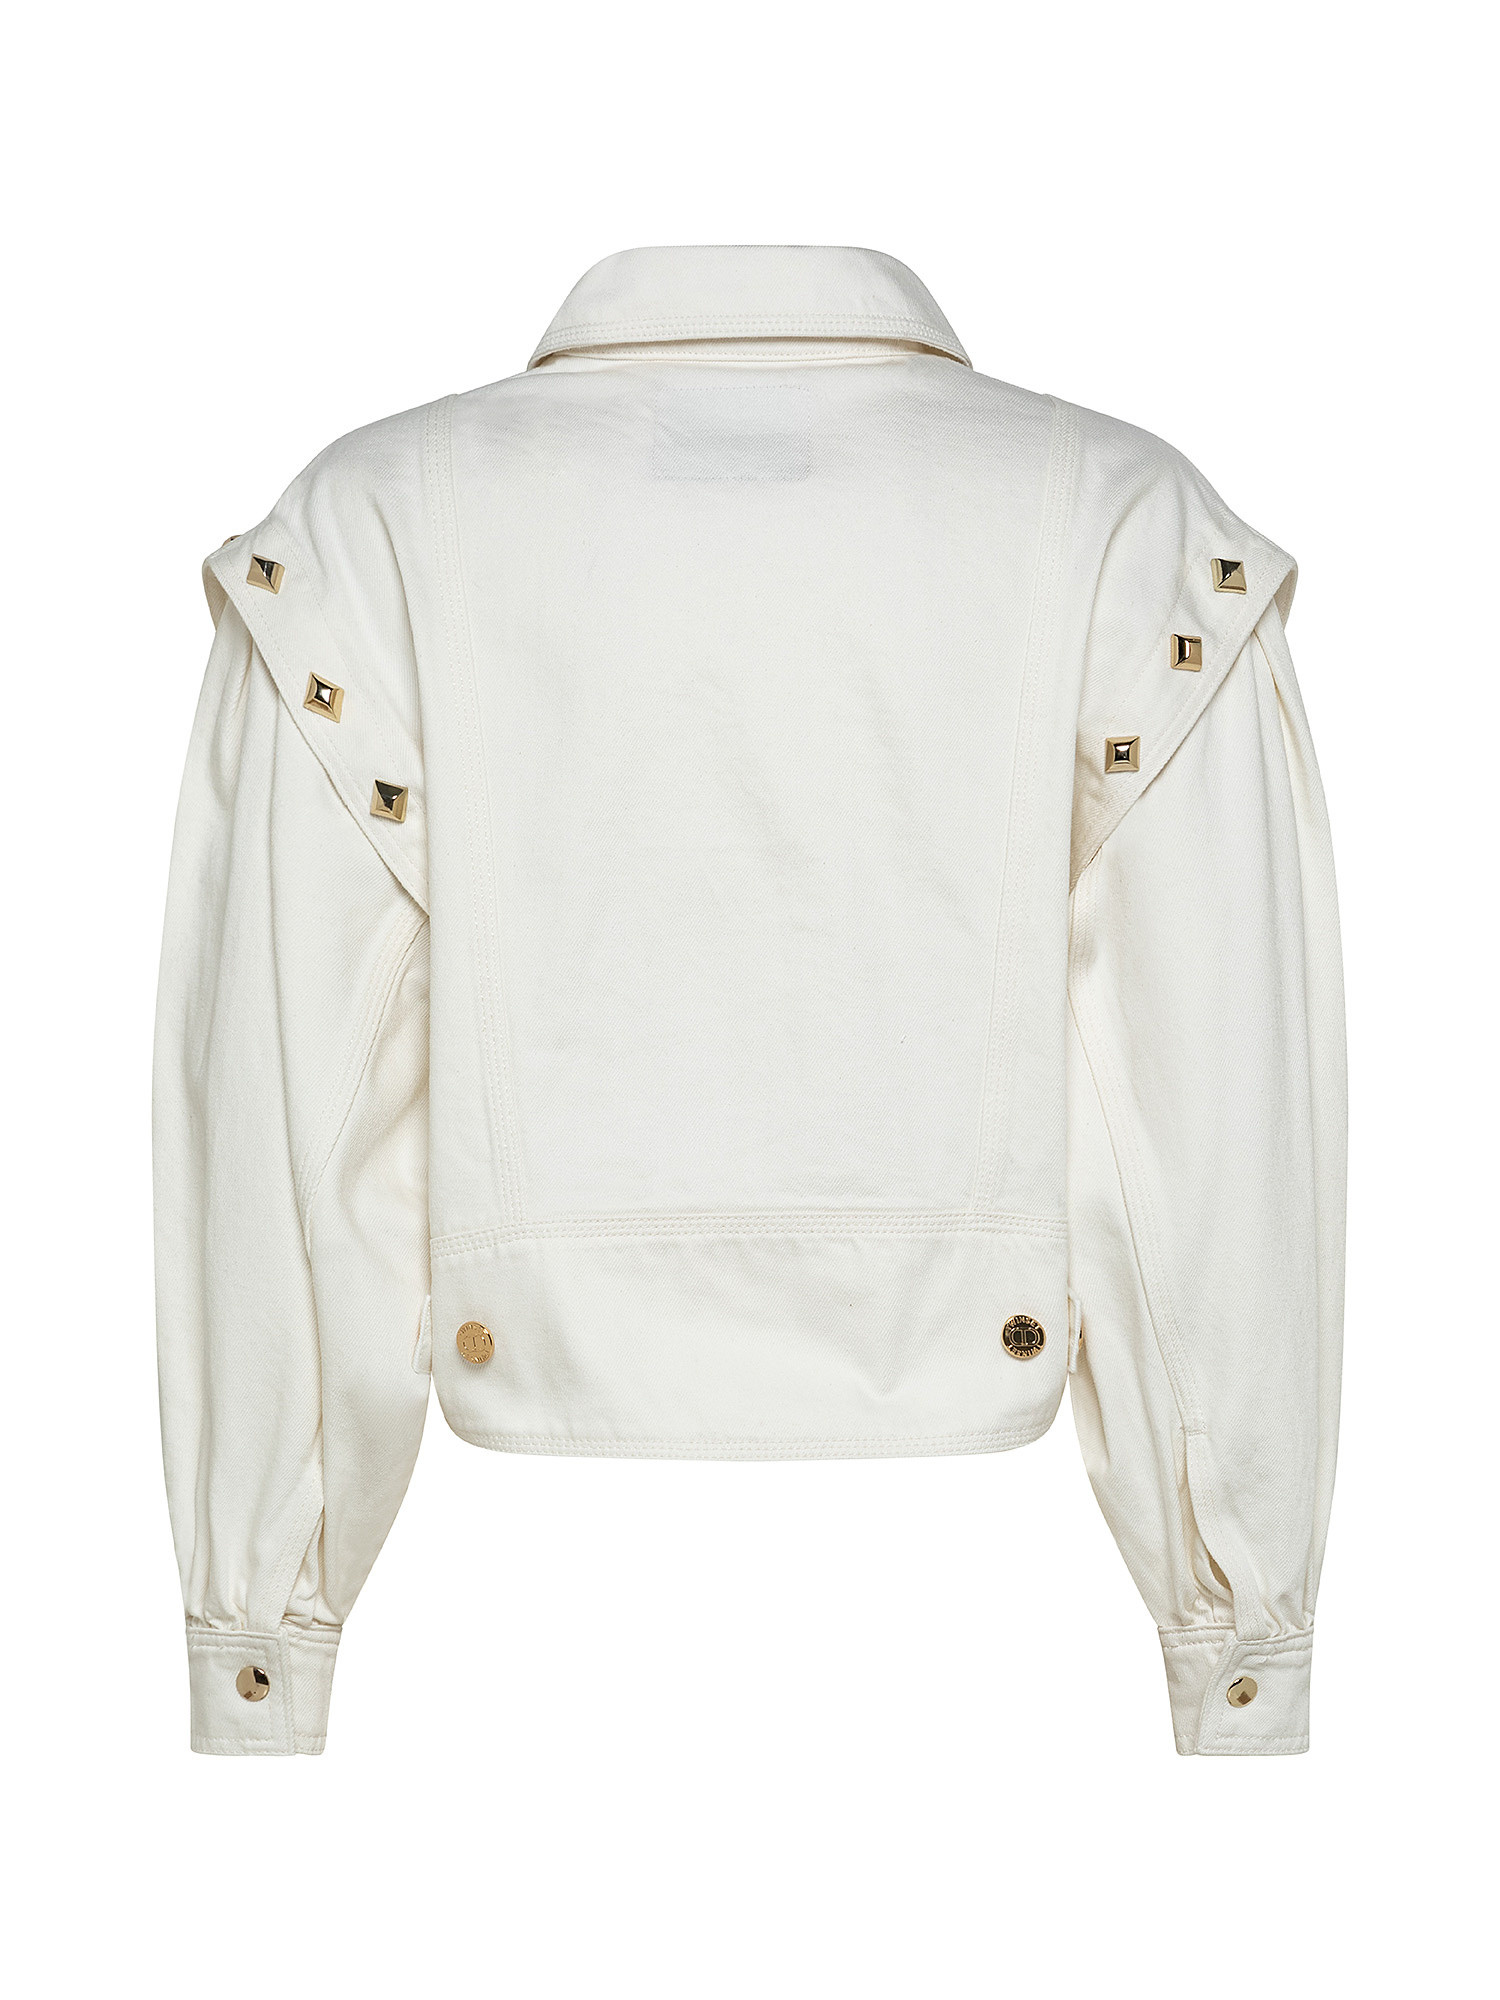 Studded jacket, White, large image number 1